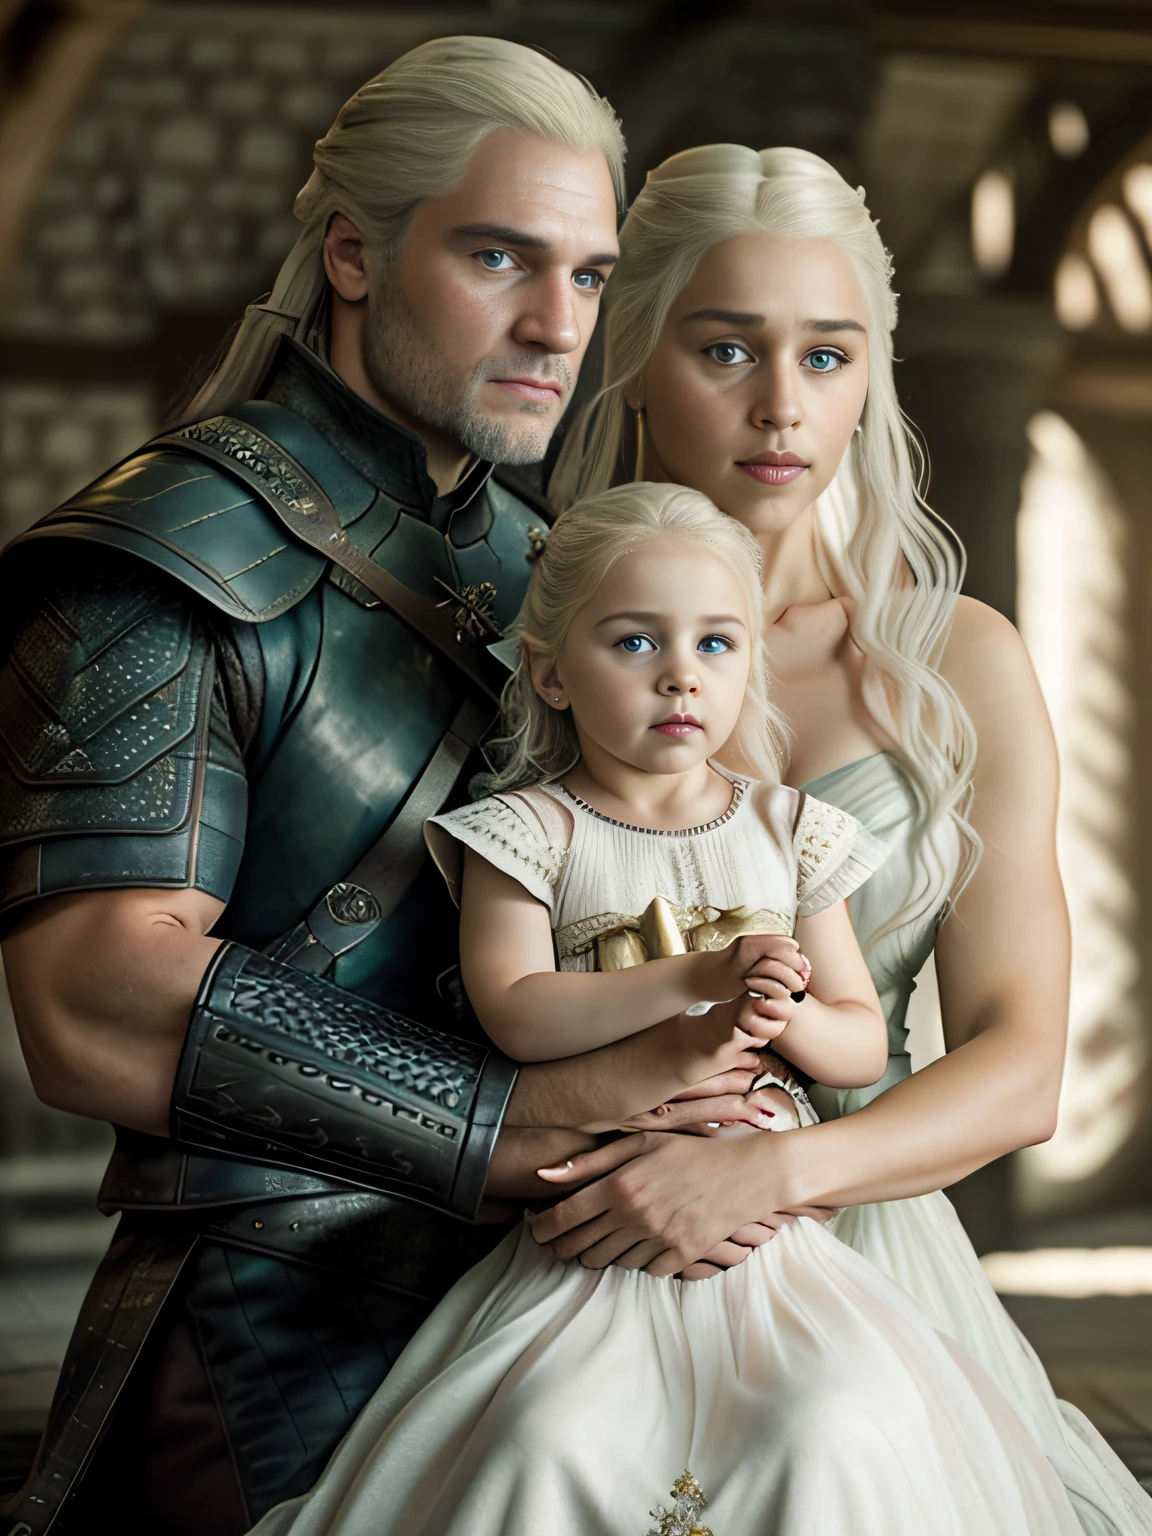 corpo inteiro cru ((foto de família de pai e mãe segurando sua filha)), 1 garota, [Daenerys Targaryen|Emília Clarke], (1 homem, Henry Cavill como Geralt de Rivia, o Mago), brincando com seus ((filha de 5 anos)))), roupas medievais,((Tiro de meio corpo)), proporções realistas, alunos realistas, ((retrato de família de 3 membros)) paleta limitada, alta resolução, iluminação cinematográfica, 8K resolution, frontal iluminado, nascer do sol, Foto CRU, nikon 85mm, premiado, Fotografia glamourosa, extremamente detalhado, linda ucraniana, alucinante, Não-Yidik, corpo inteiro cru photo of Daenerys Targaryen and Geralt de Rivia The Witcher with filha de 5 anos, altamente detalhado, estação de arte, suave, foco nitído, 8K,, tendências no instagram, tendências no tumblr, hd 4k, 8K